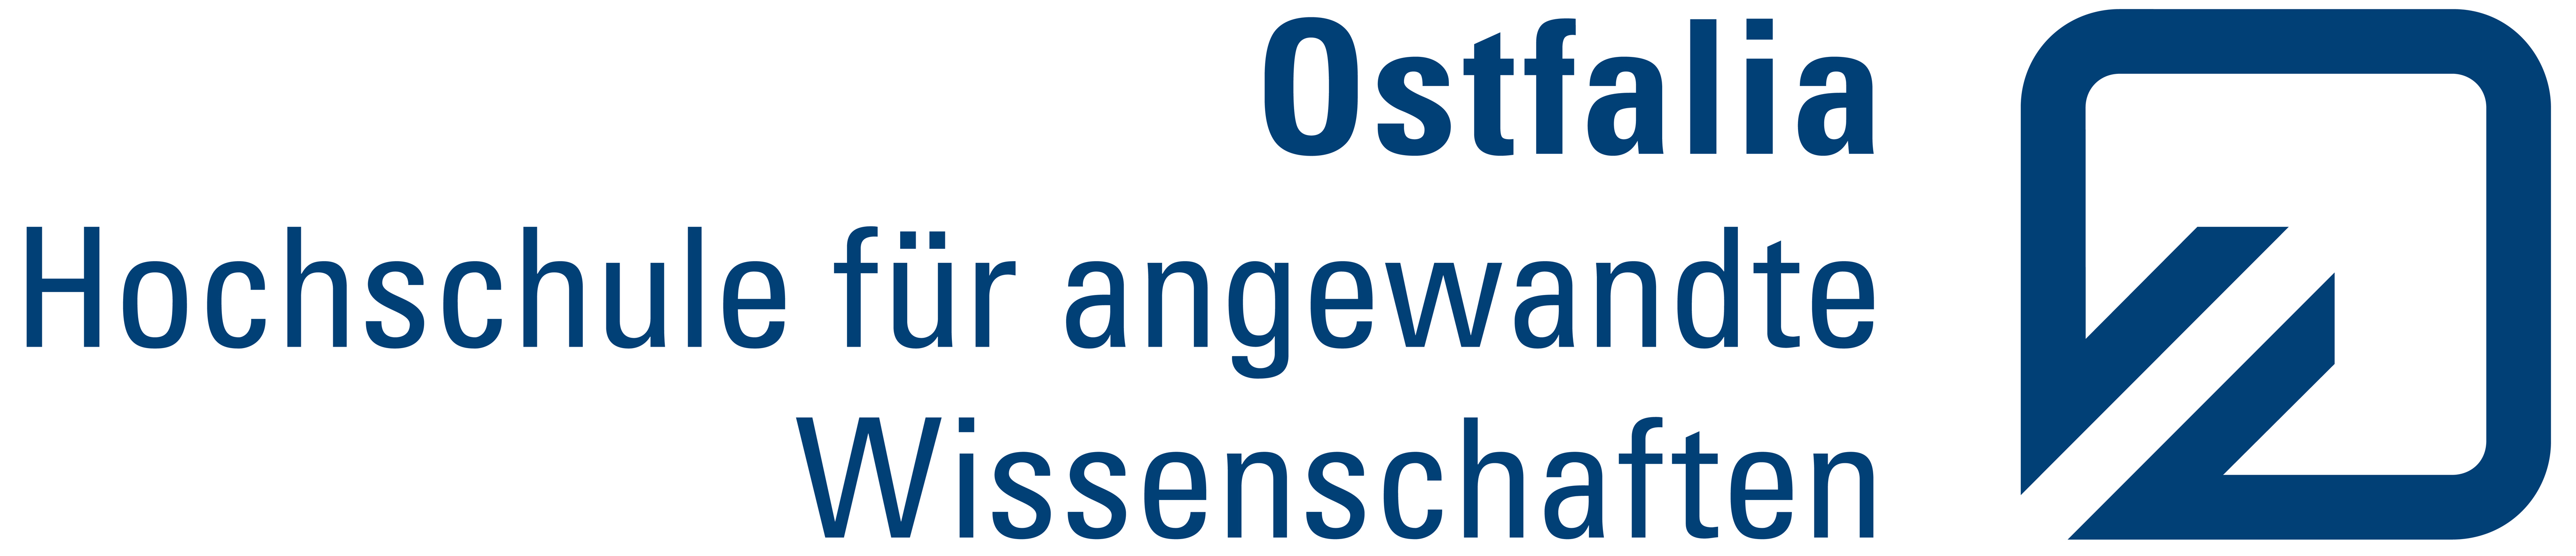 Ostfalia Hochschule für angewandte Wissenschaften Logo